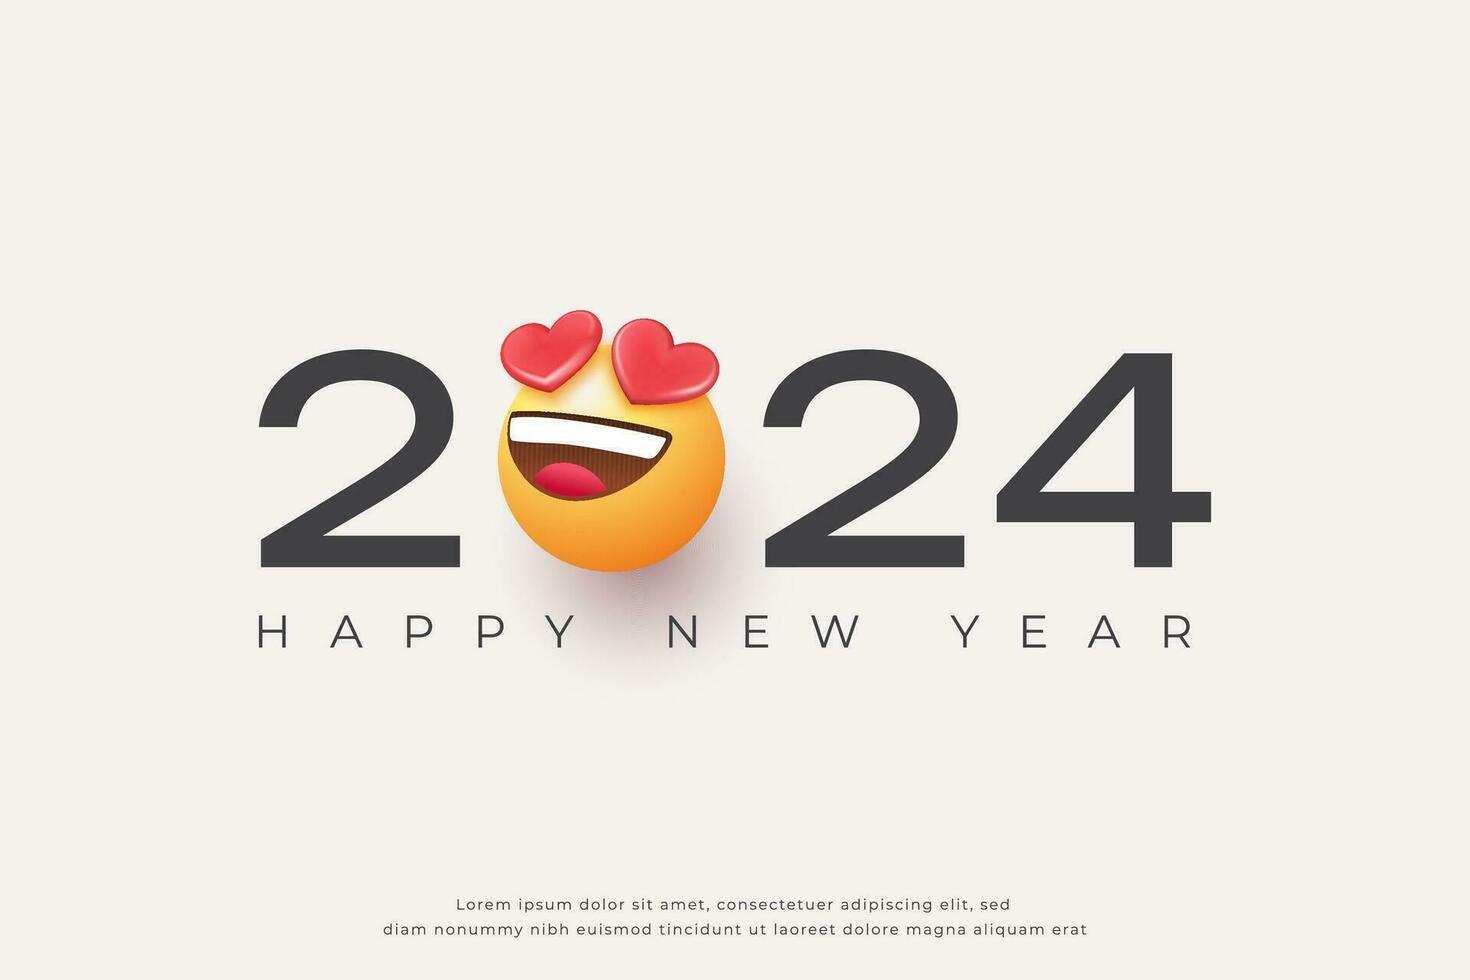 contento nuevo año 2024 con amor emoji diseño vector